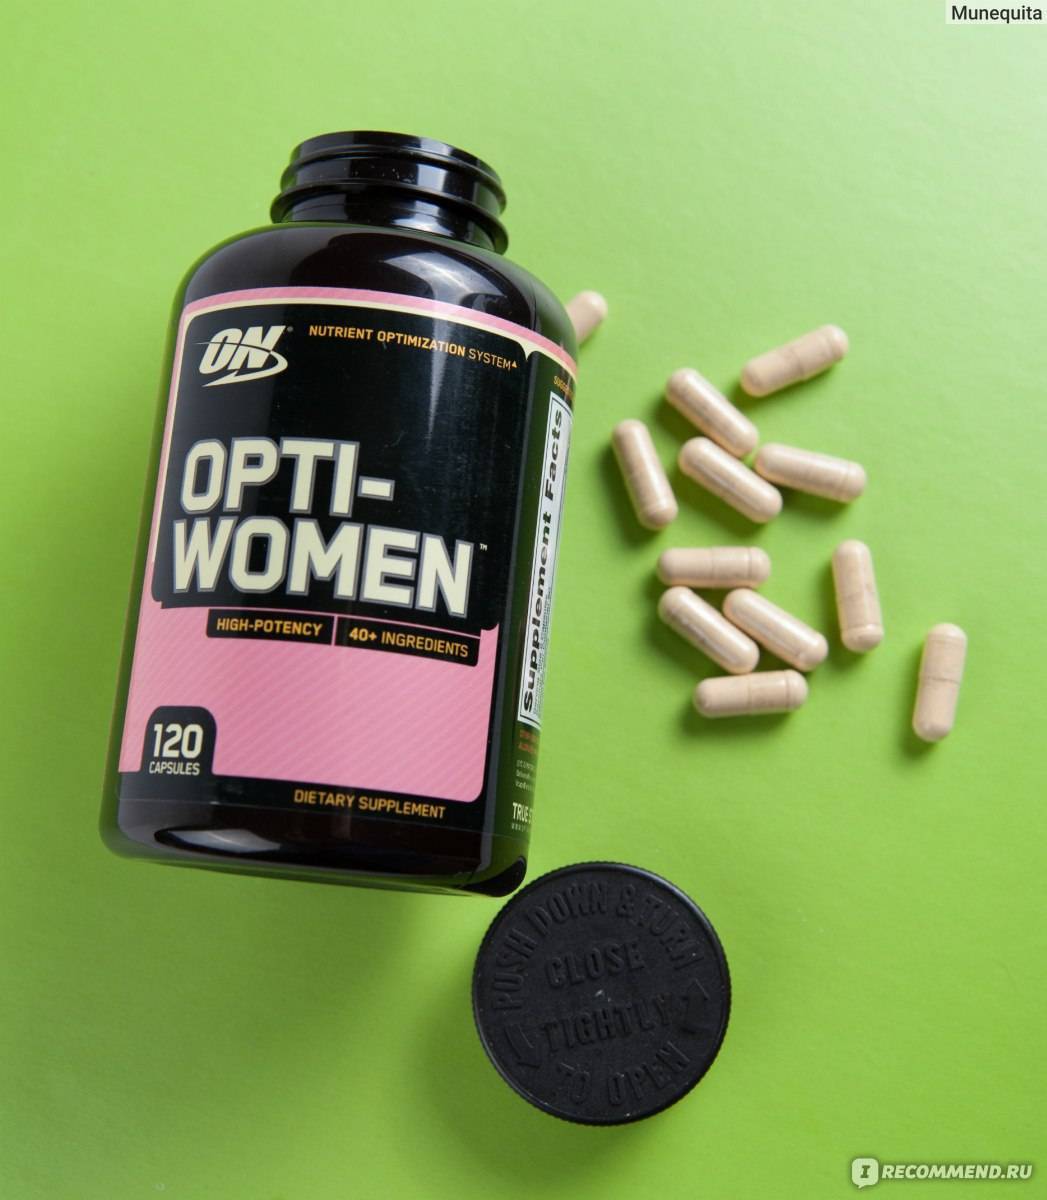 Как правильно принимать витамины opti women